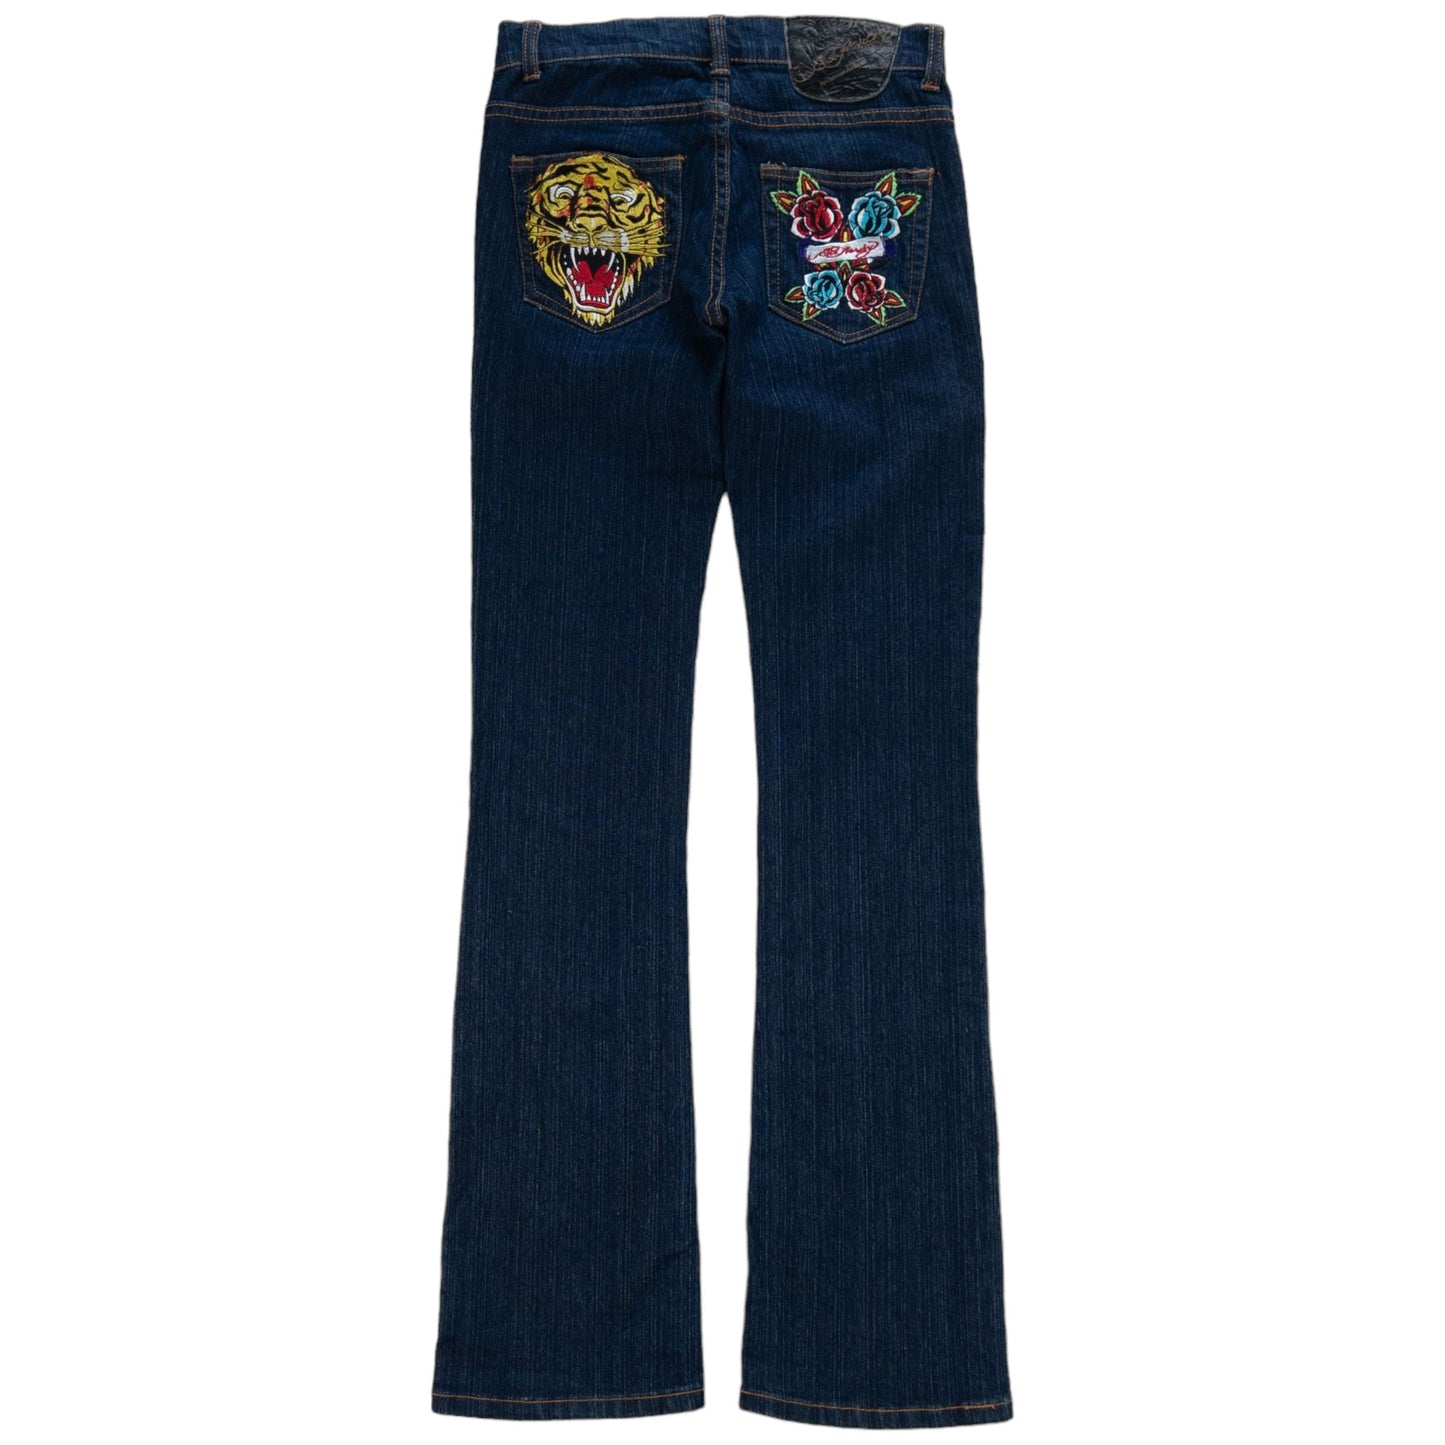 Vintage Ed Hardy Stretch Denim Jeans Size Women's Size W28